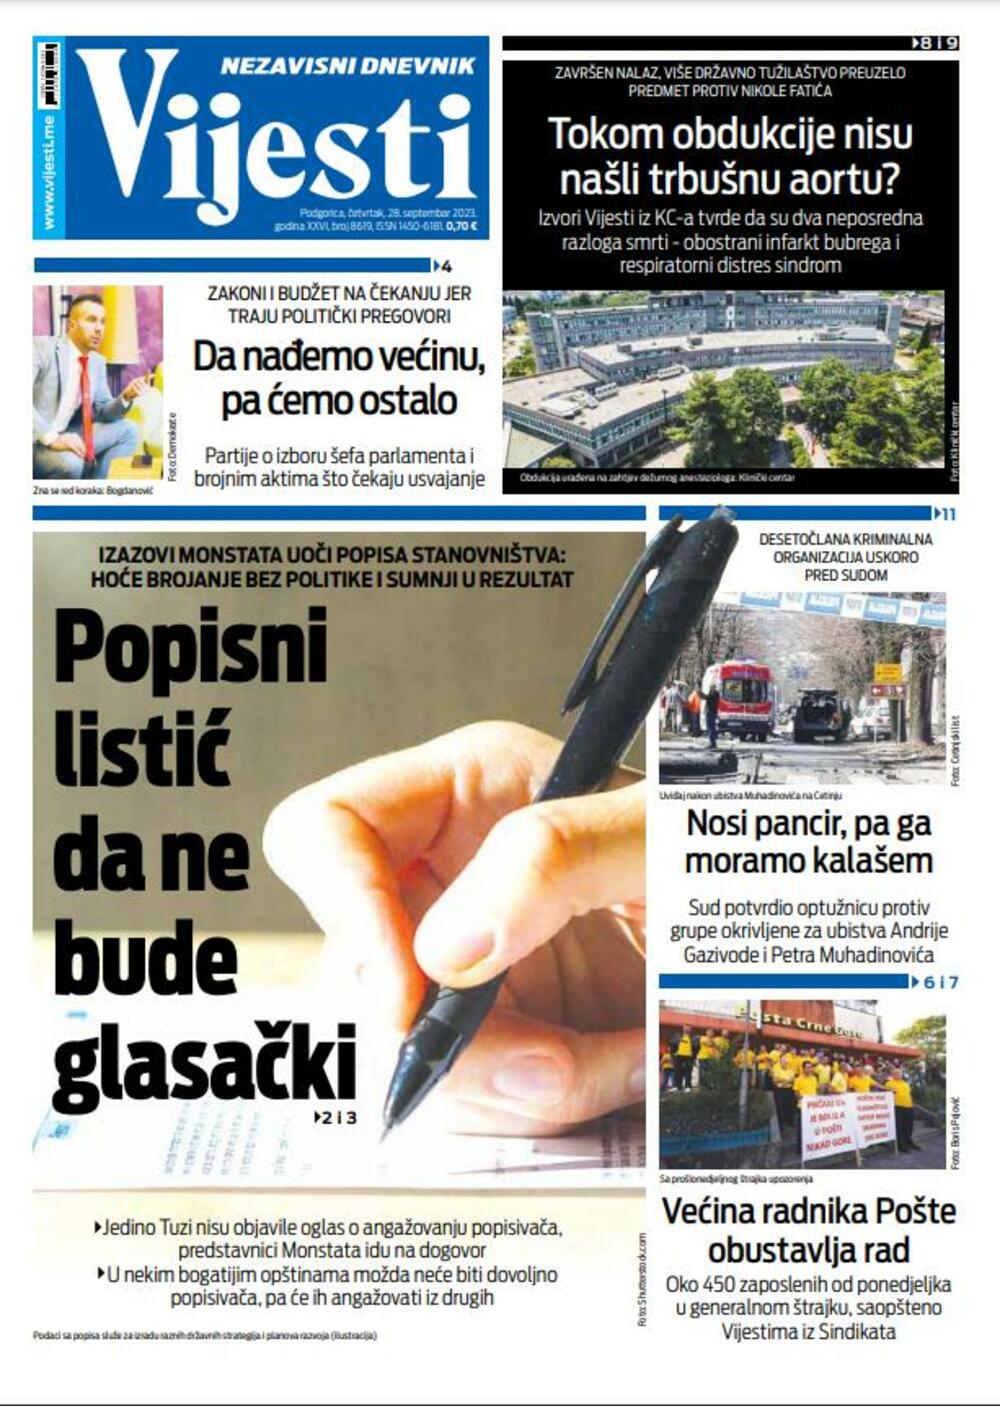 Naslovna strana "Vijesti" za 28. septembar 2023., Foto: Vijesti